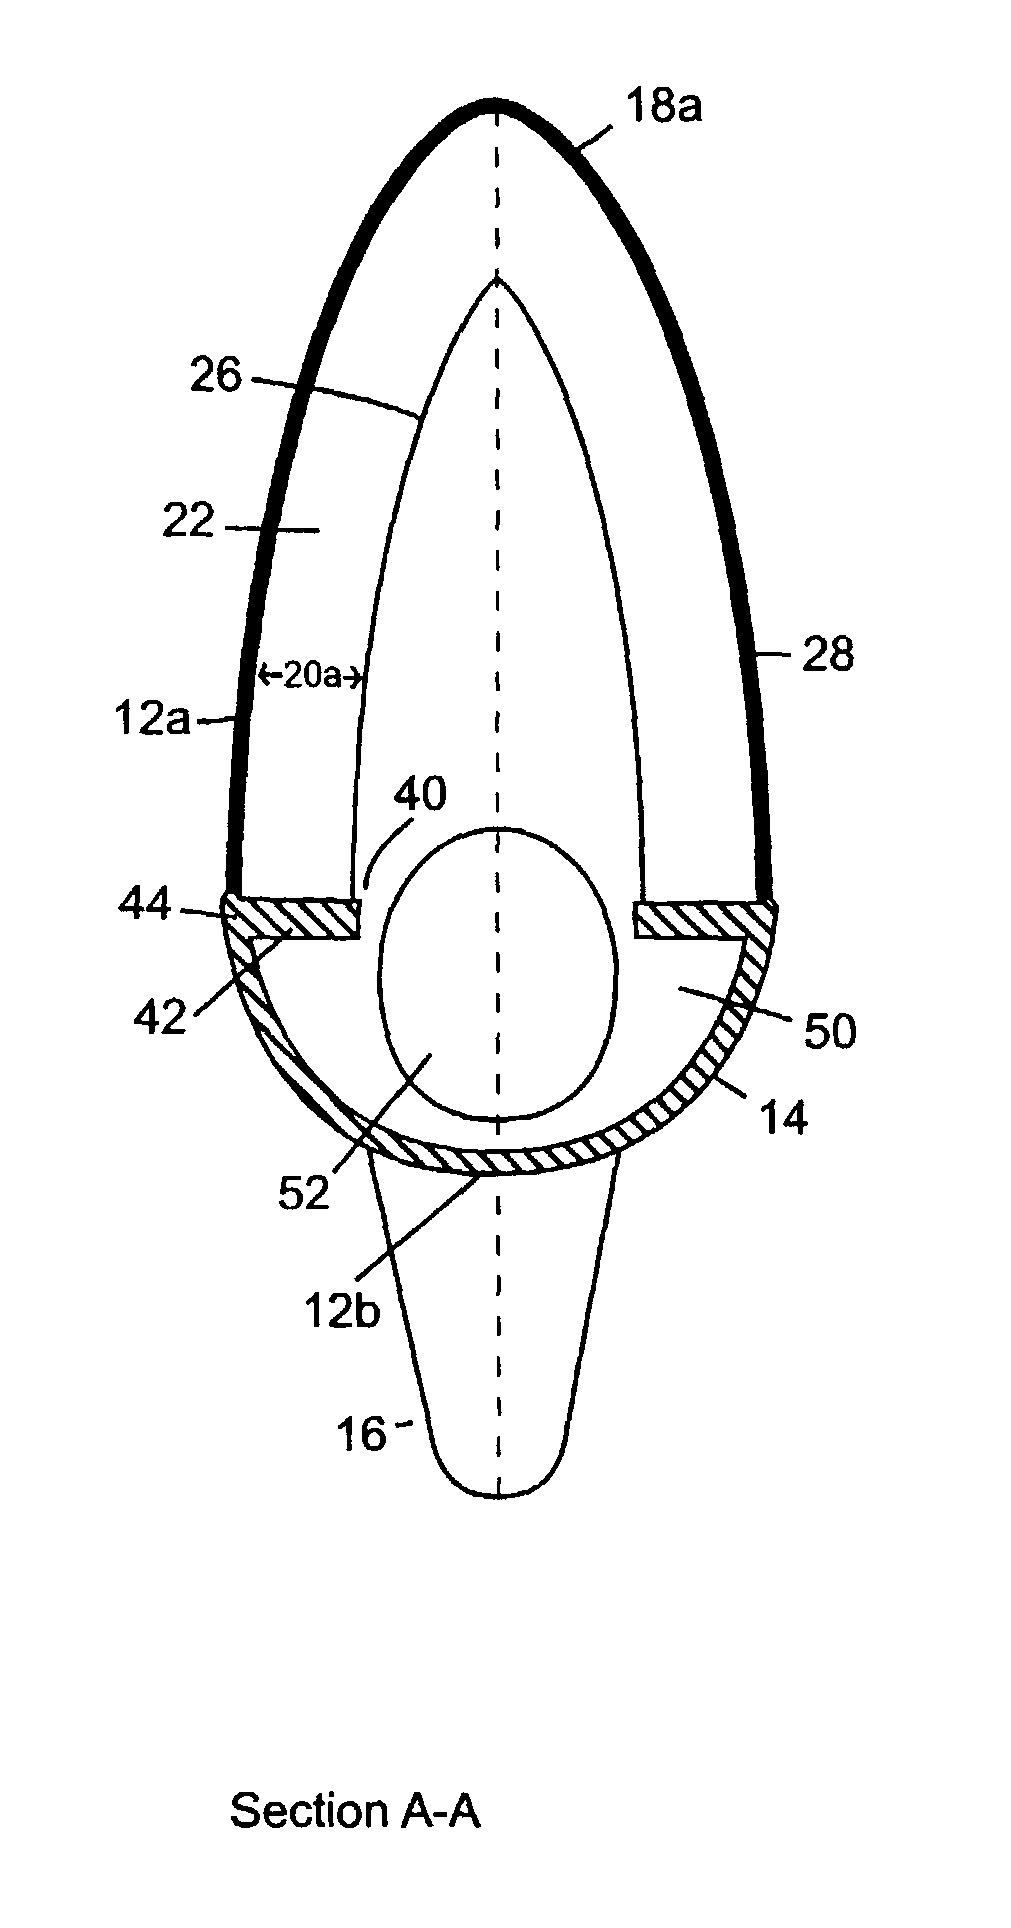 Apparatus for extra-labial urine voiding